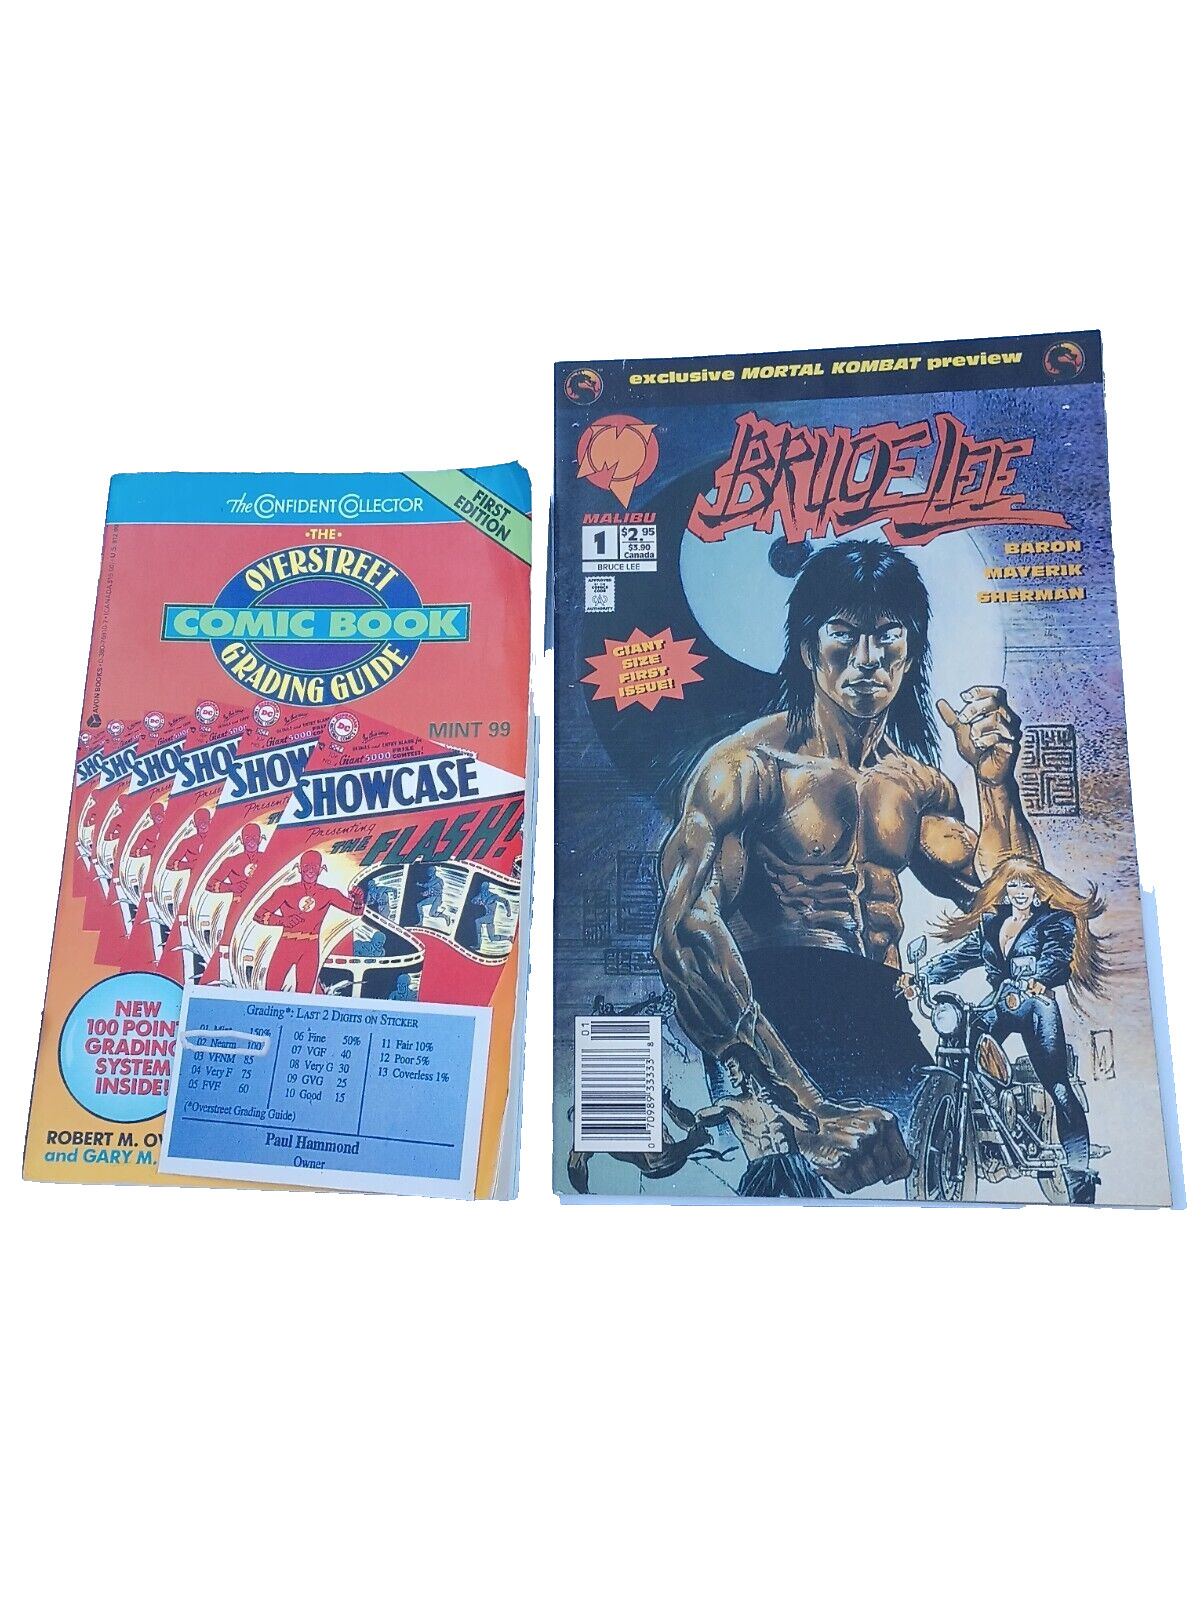 BRUCE LEE #1 MALIBU Comics 1994